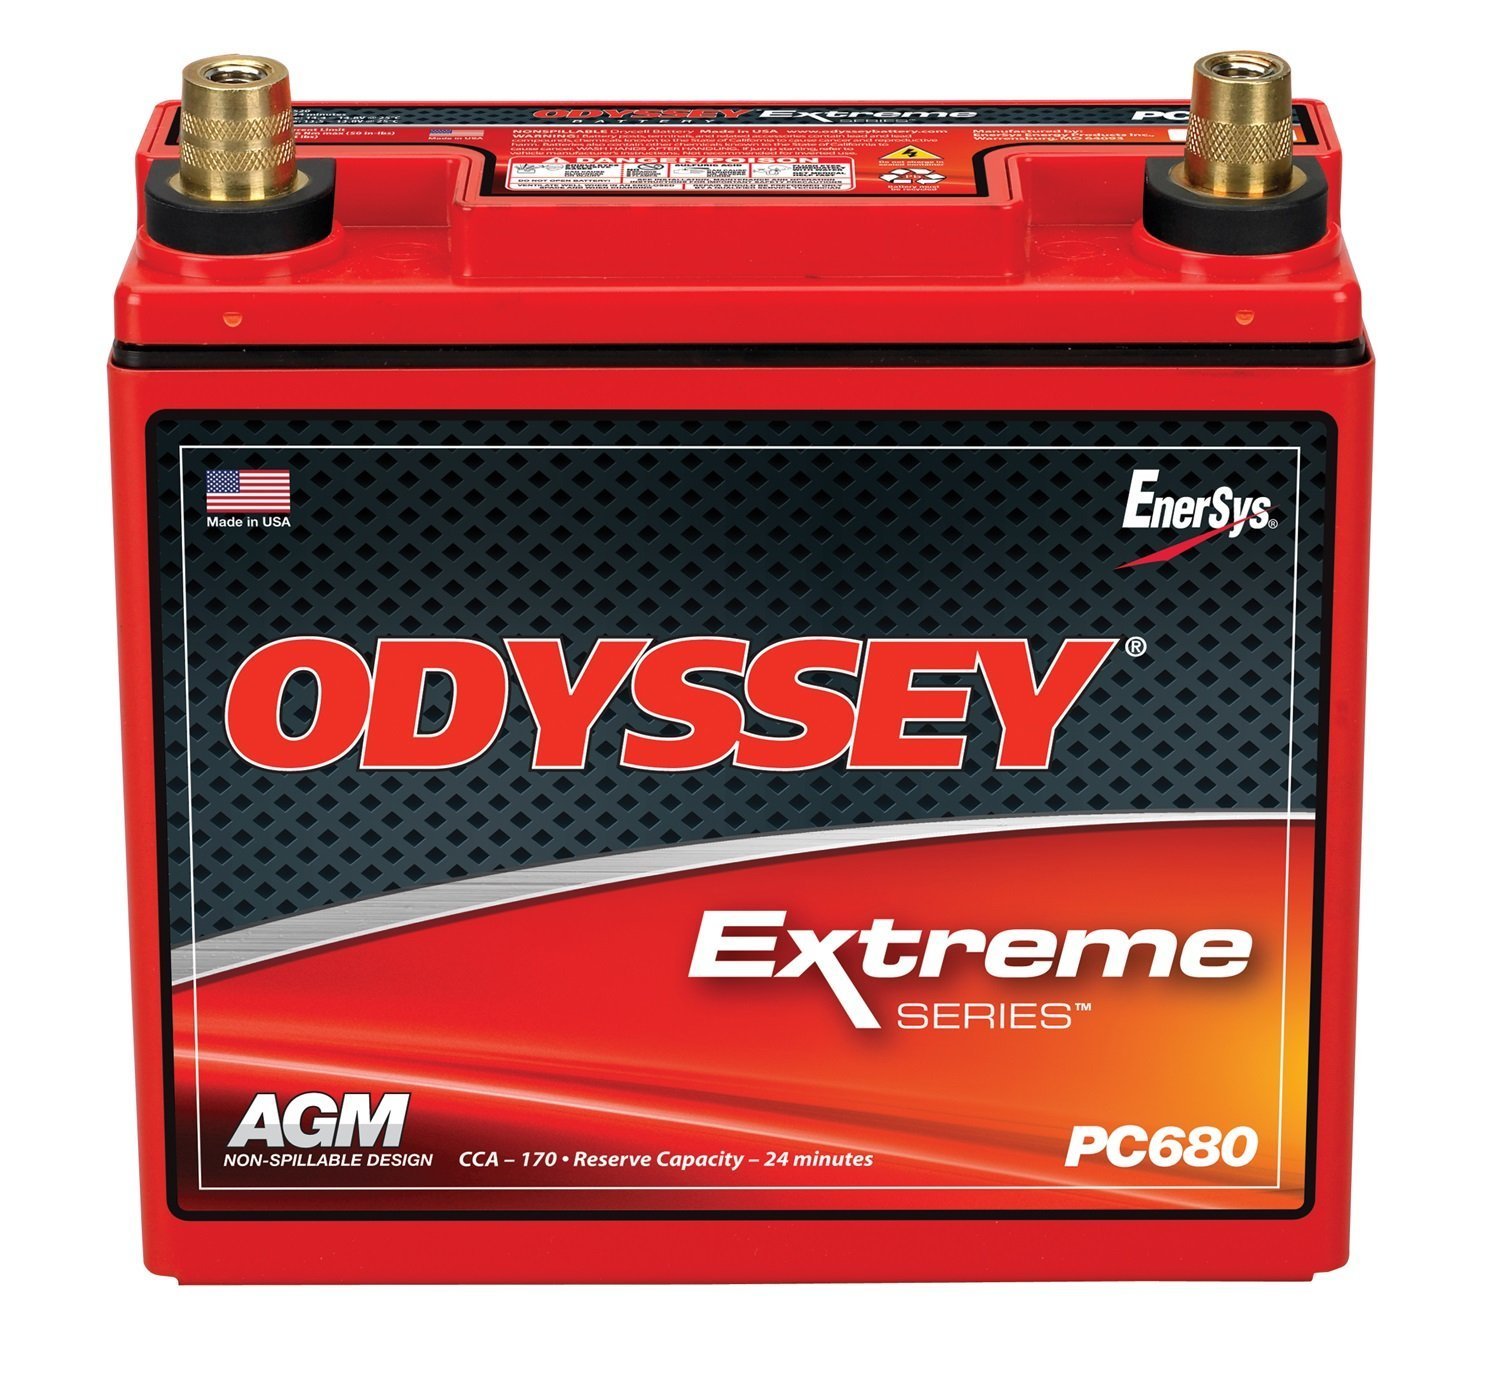 Odyssey PC680 Battery